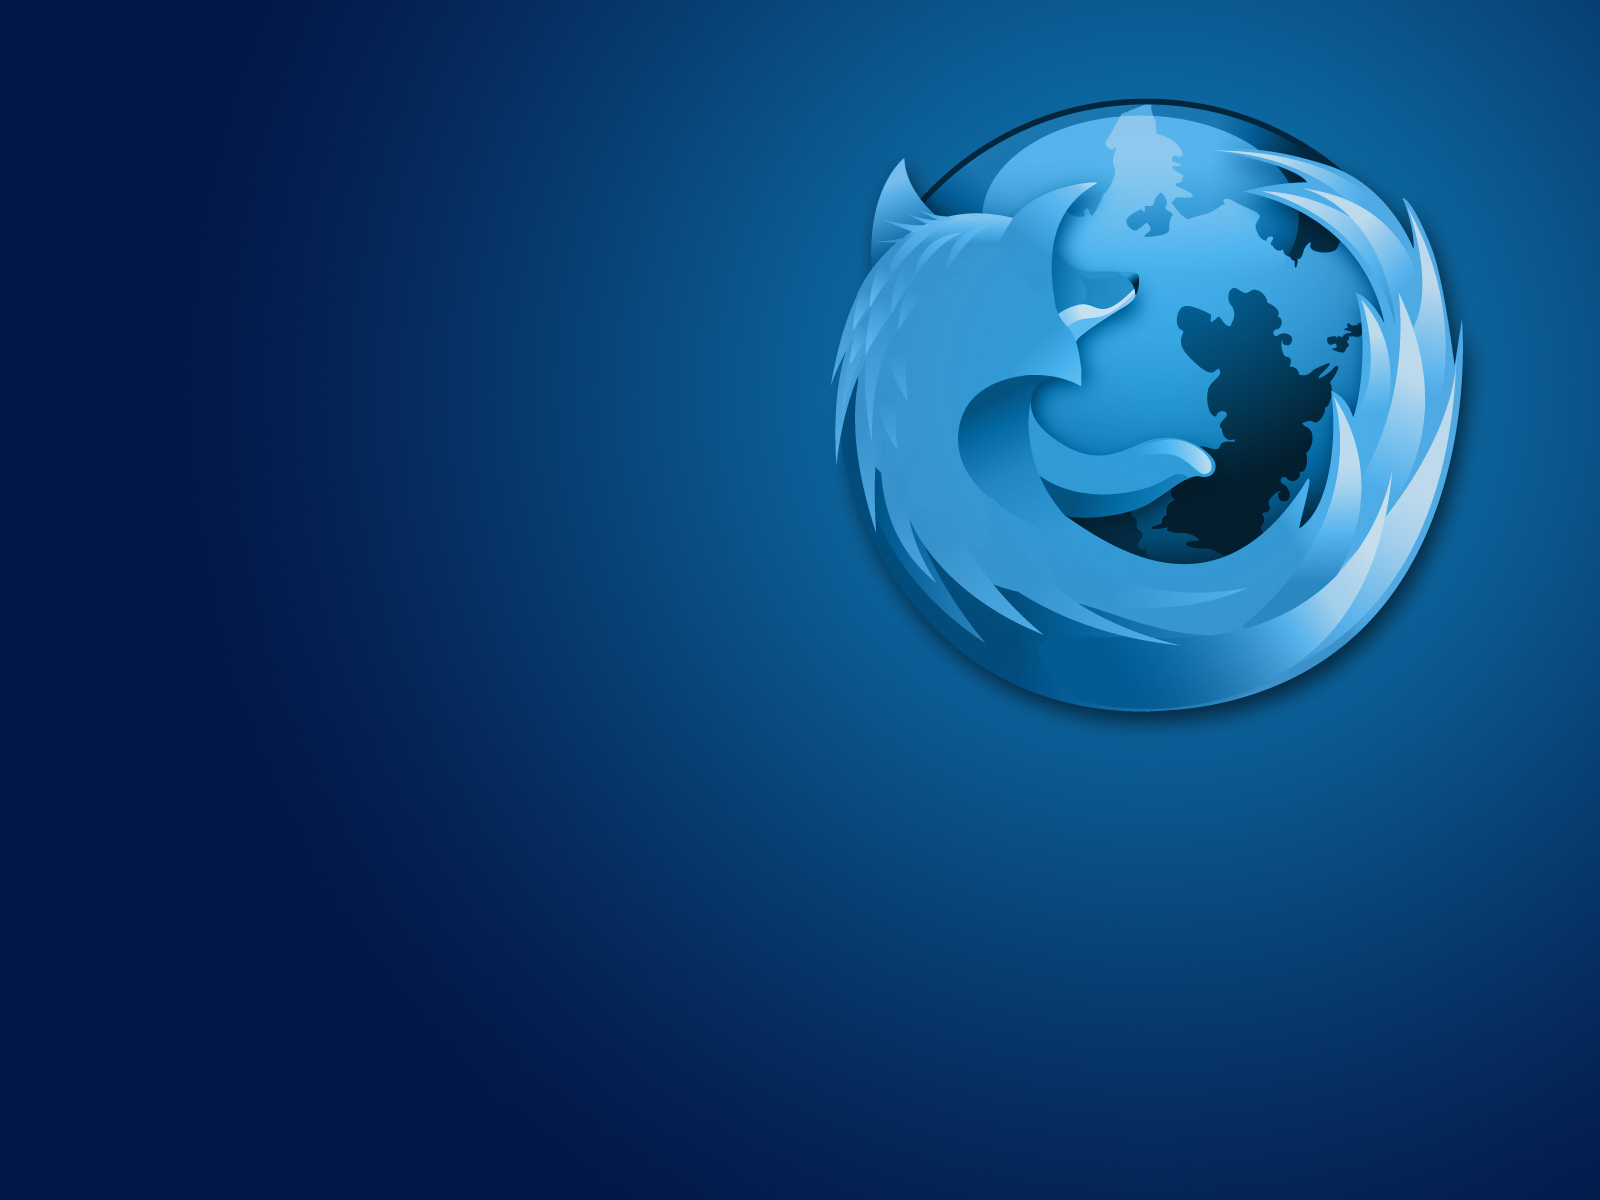 Fond d'ecran Firefox